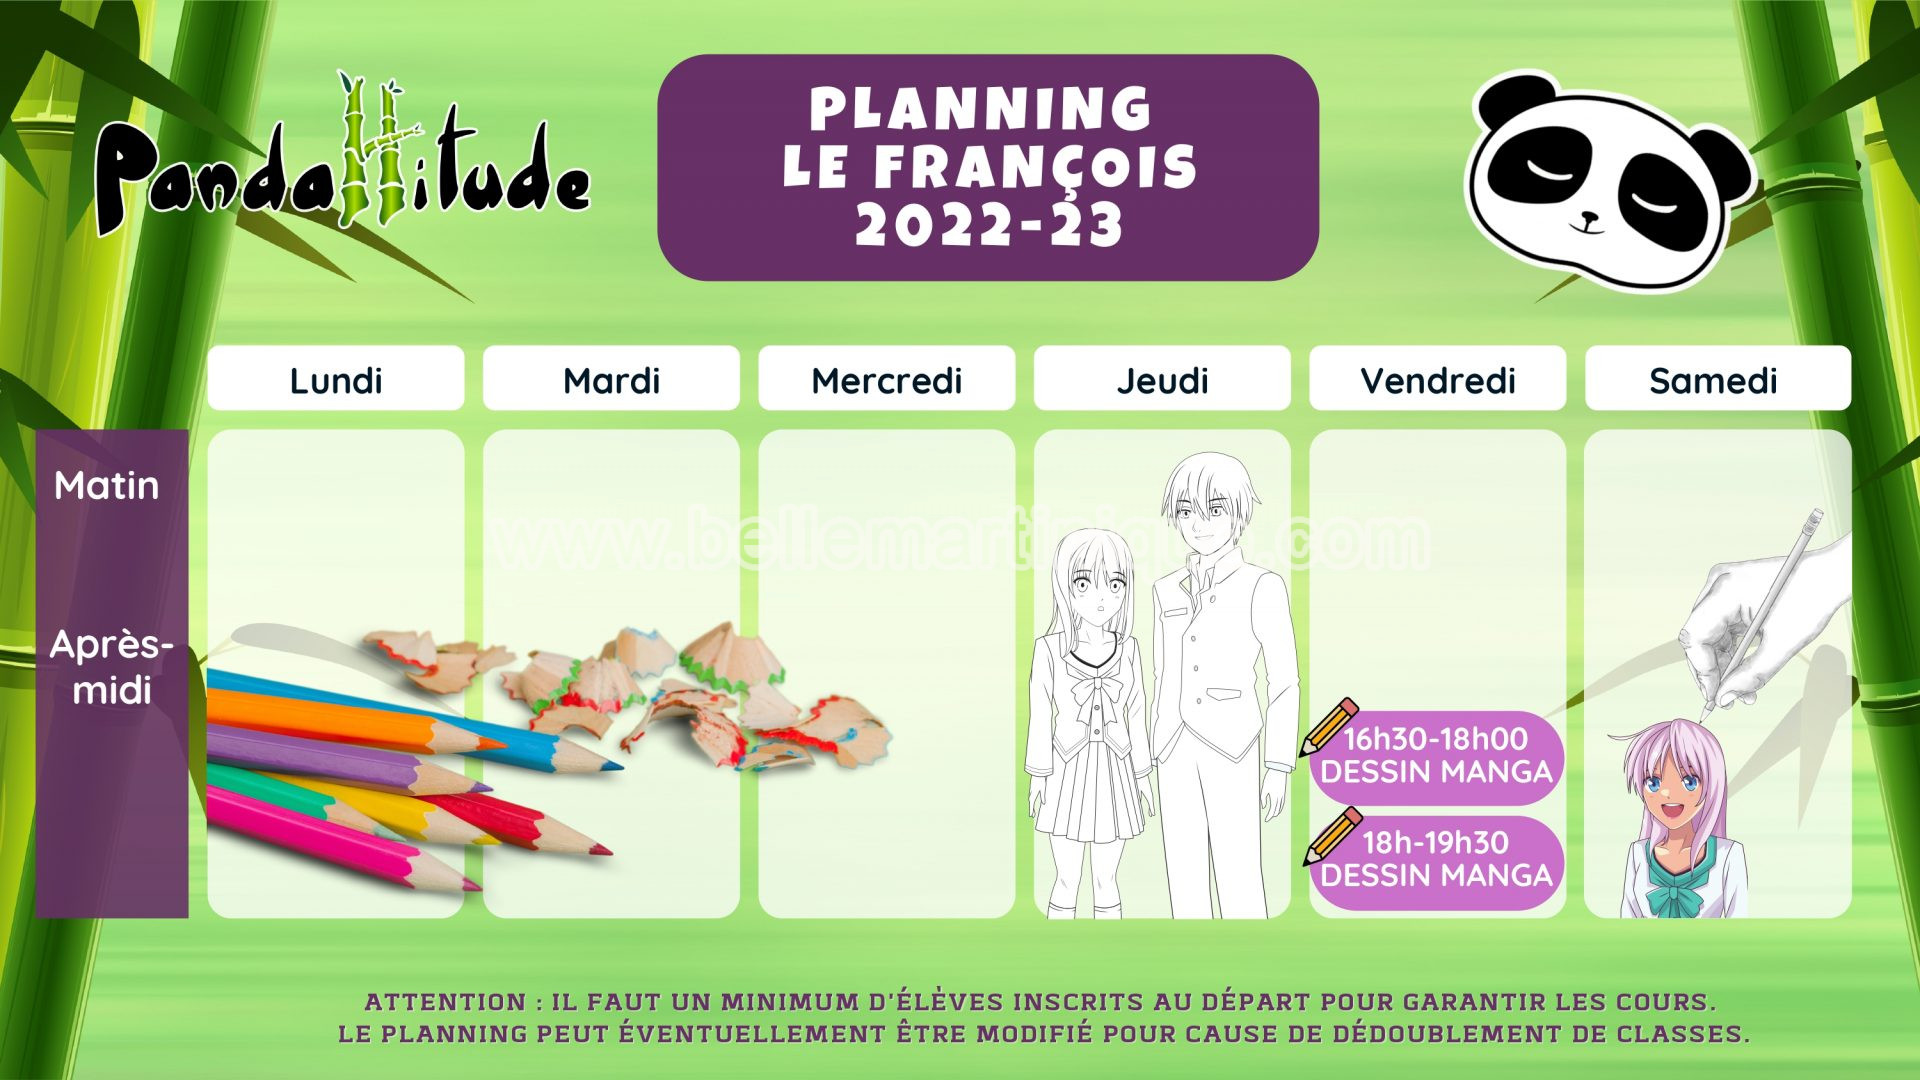 Planning pandattitude Le François